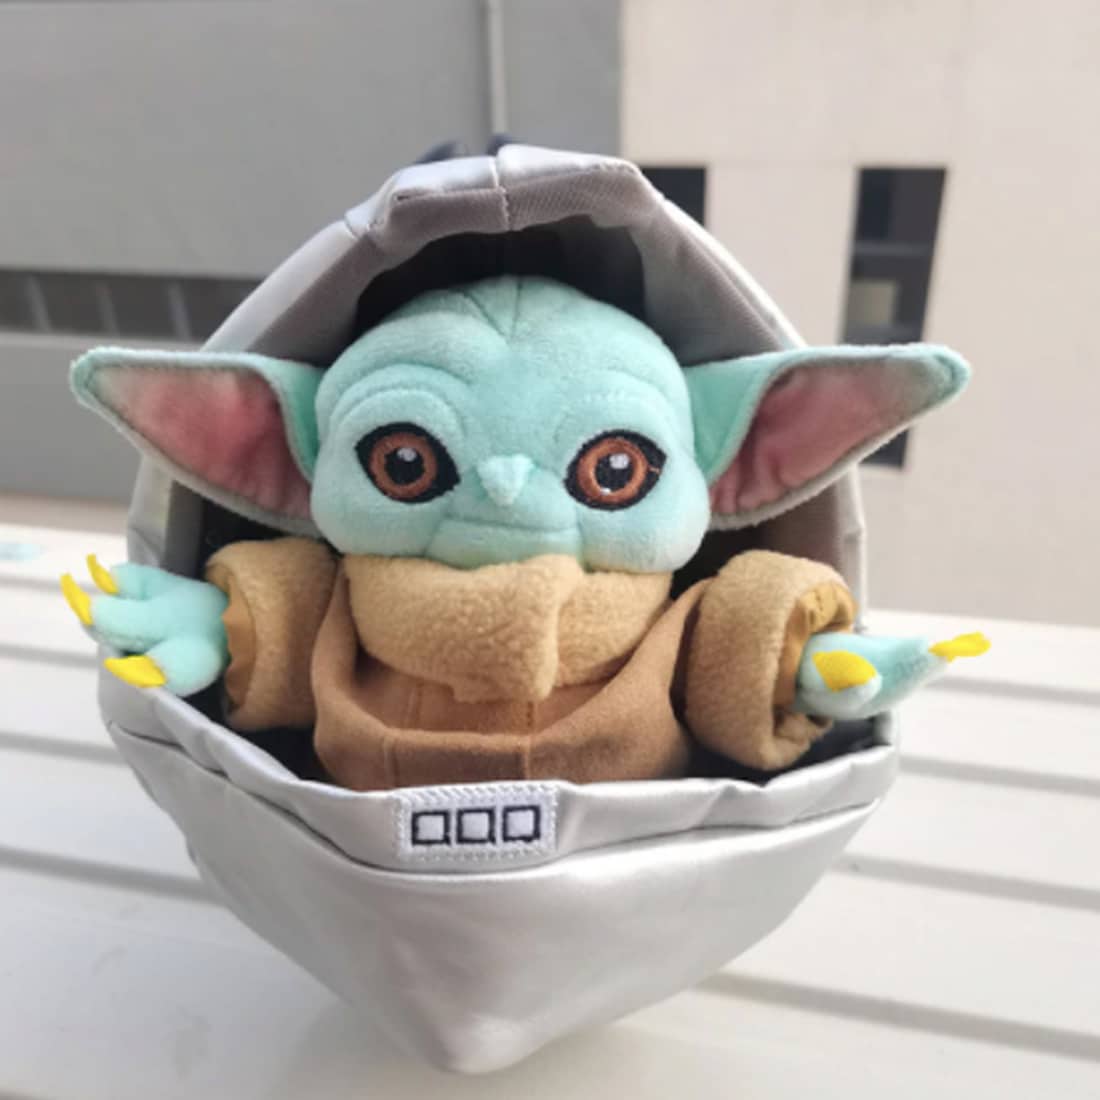 Peluche Baby Yoda nella sua culla Peluche Disney Star Wars Peluche Dimensione: 23 cm